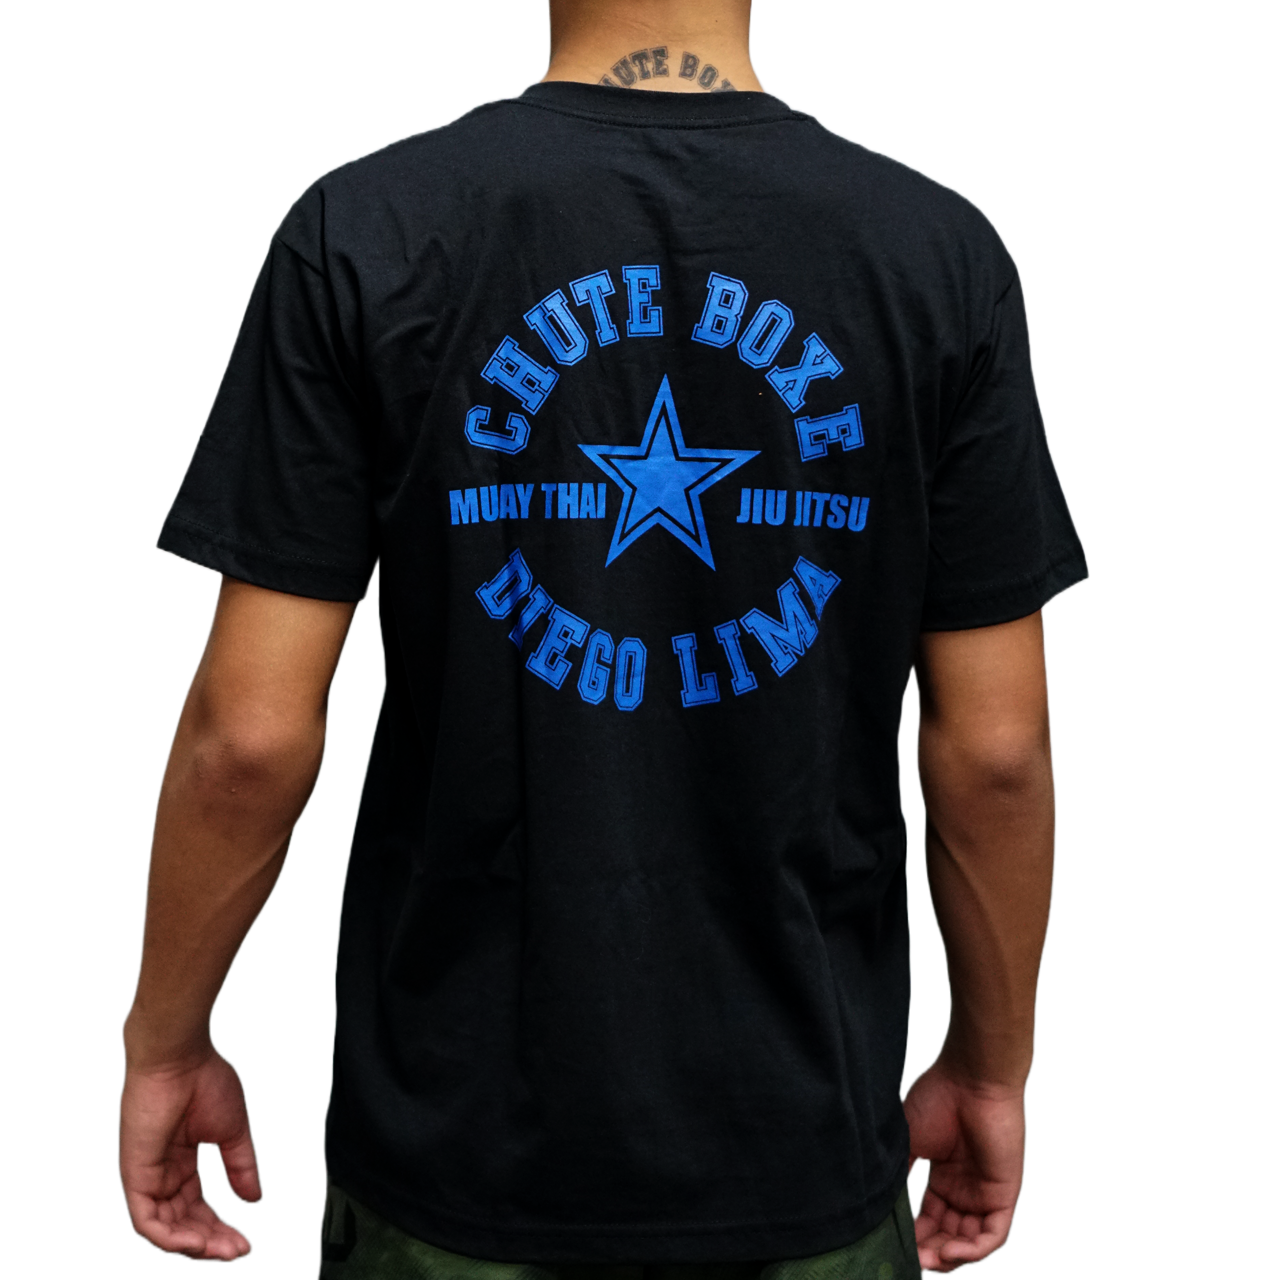 Camiseta Muay Thai Jiu Jtisu Chute Boxe Diego Lima Preta com Azul